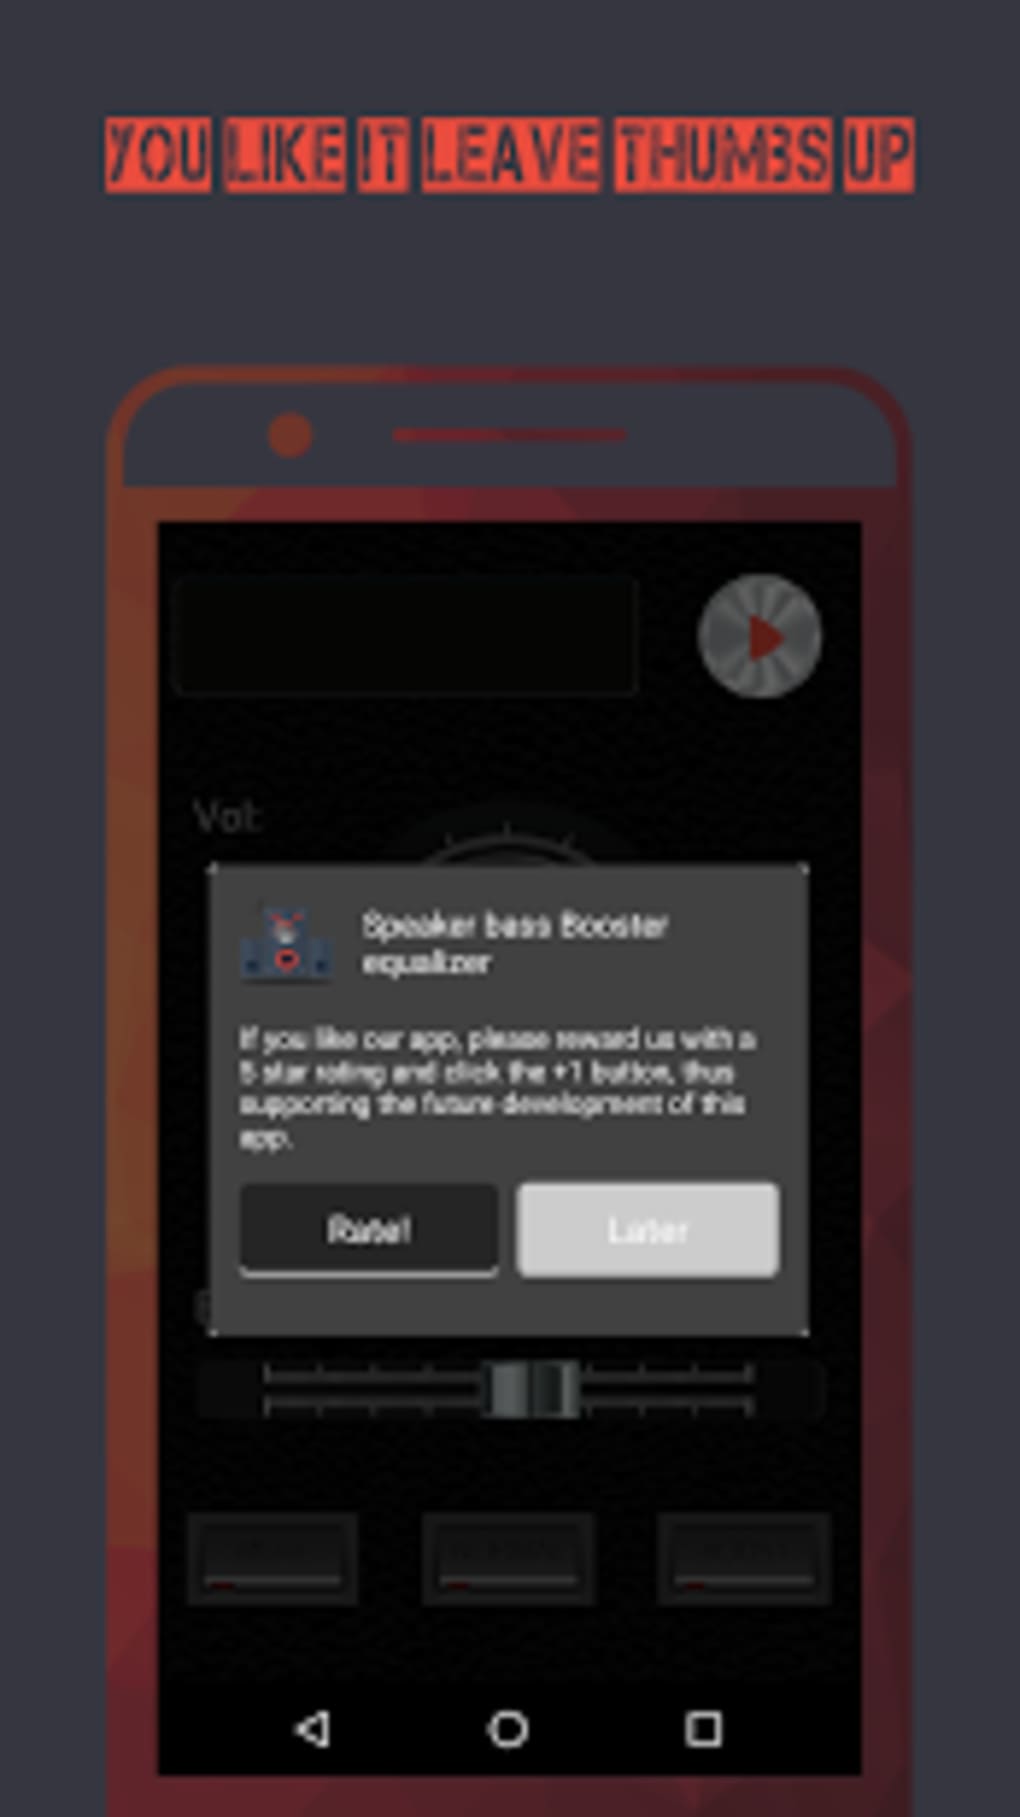 speaker bass booster equalizer screenshot